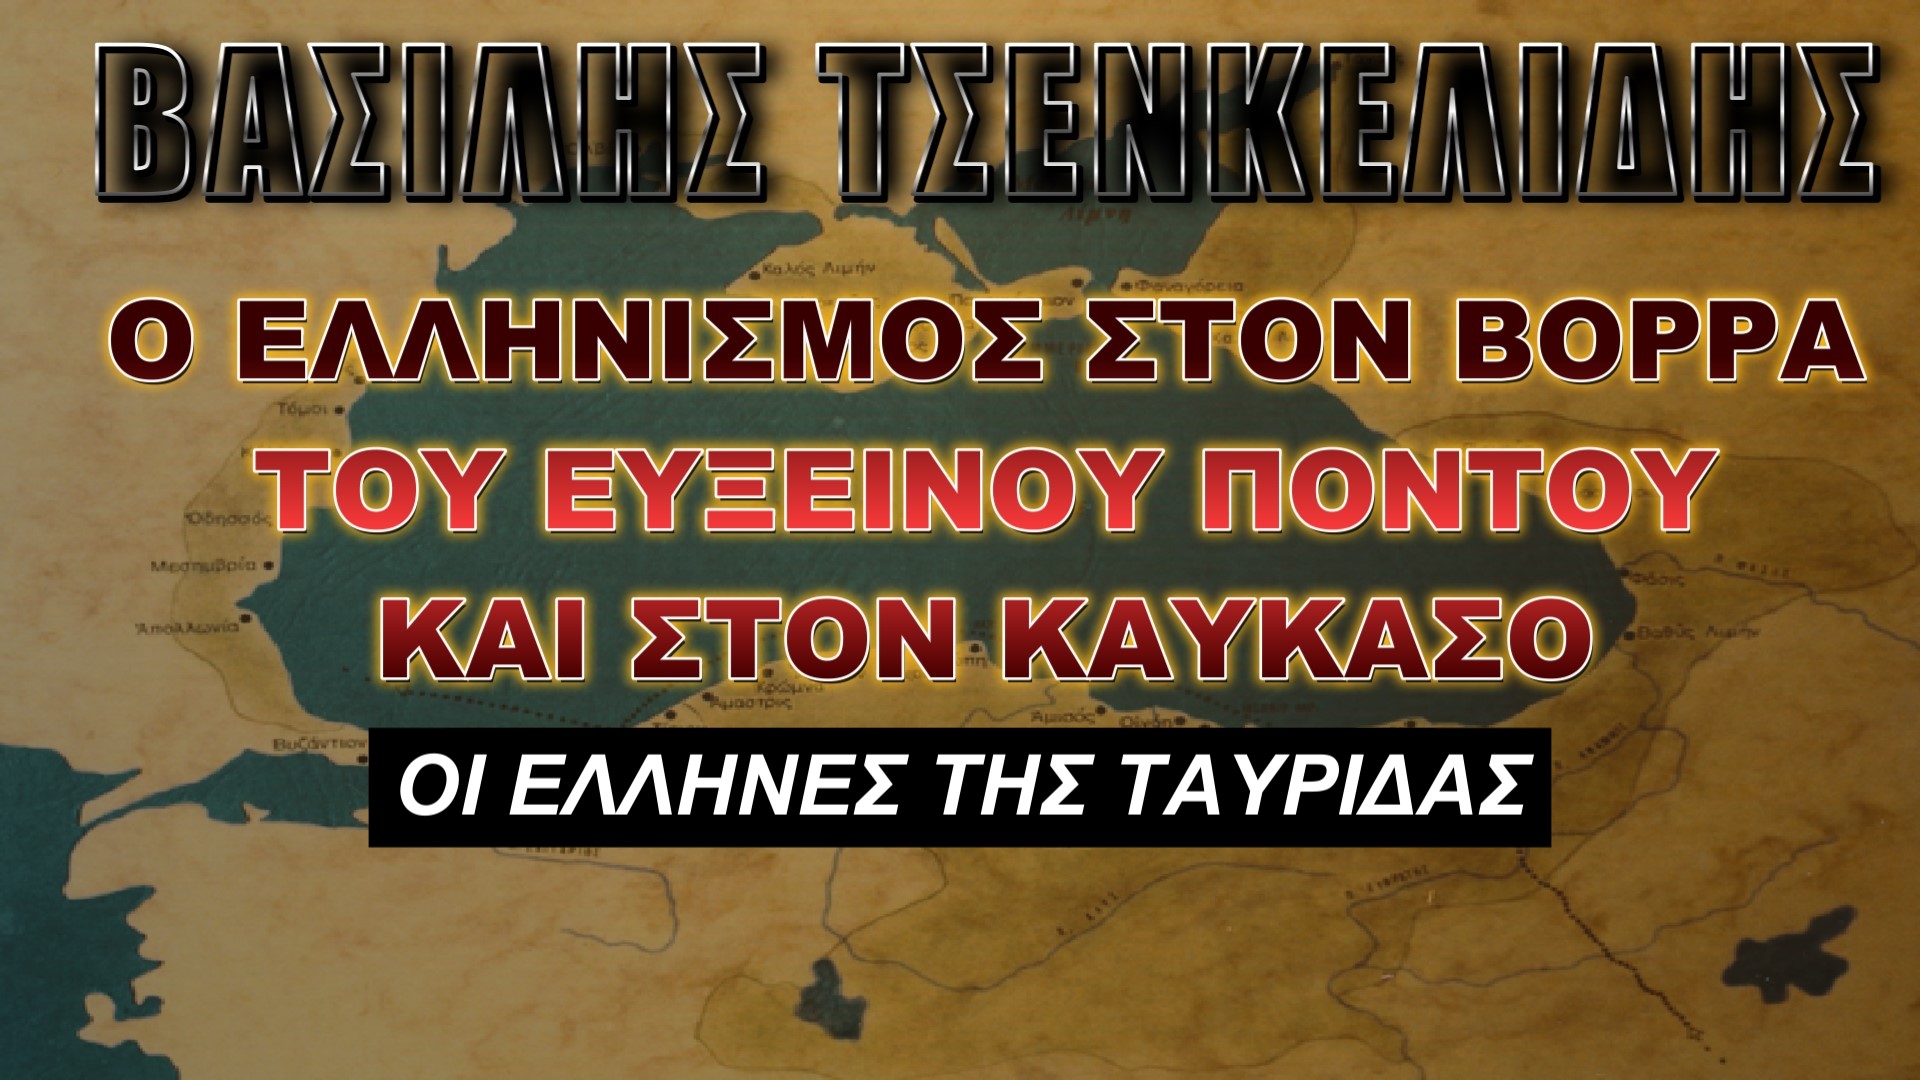 Οι Έλληνες της Ταυρίδας